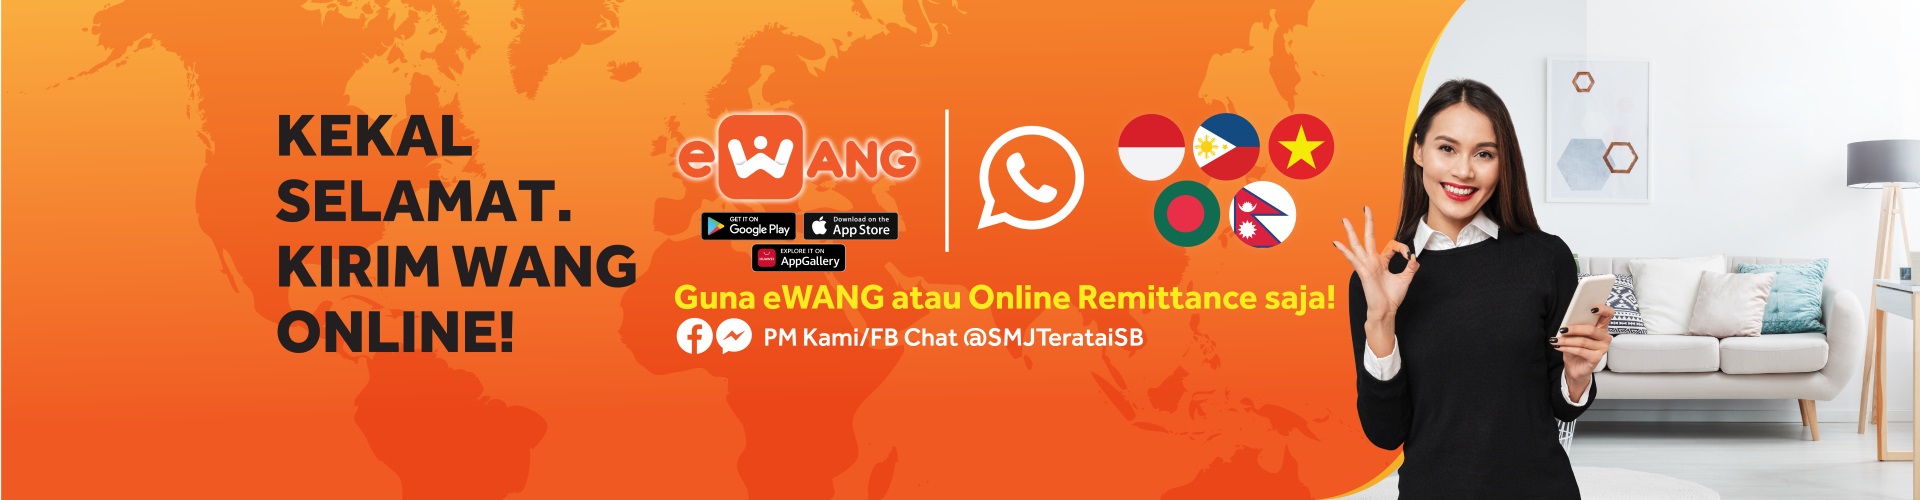 Online Remittance